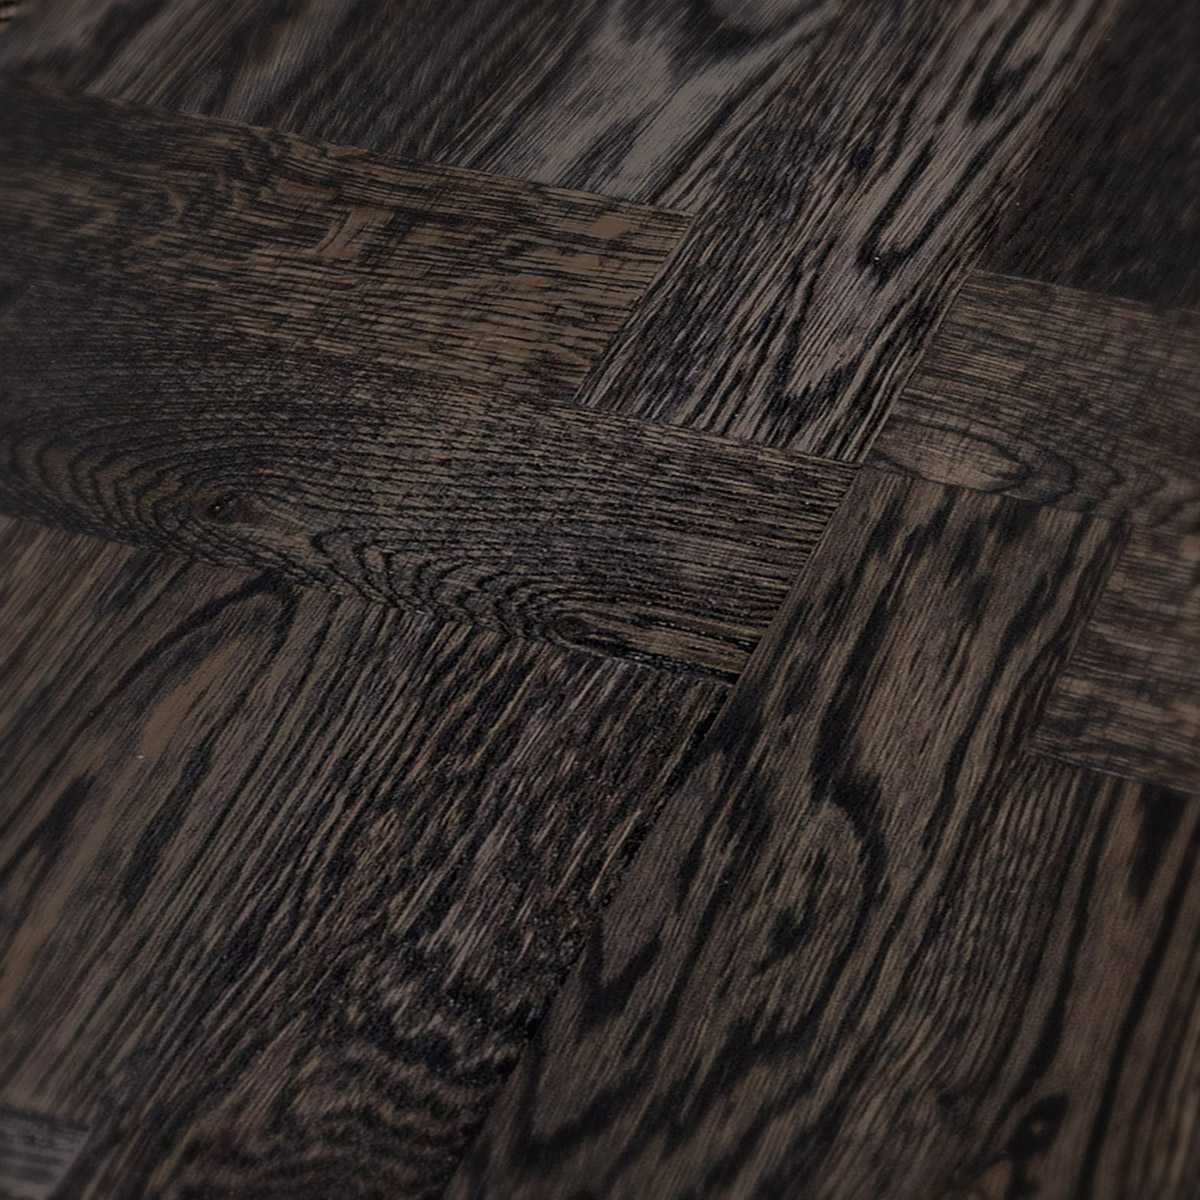 Soest Drive - basket-woven parquet floor close-up